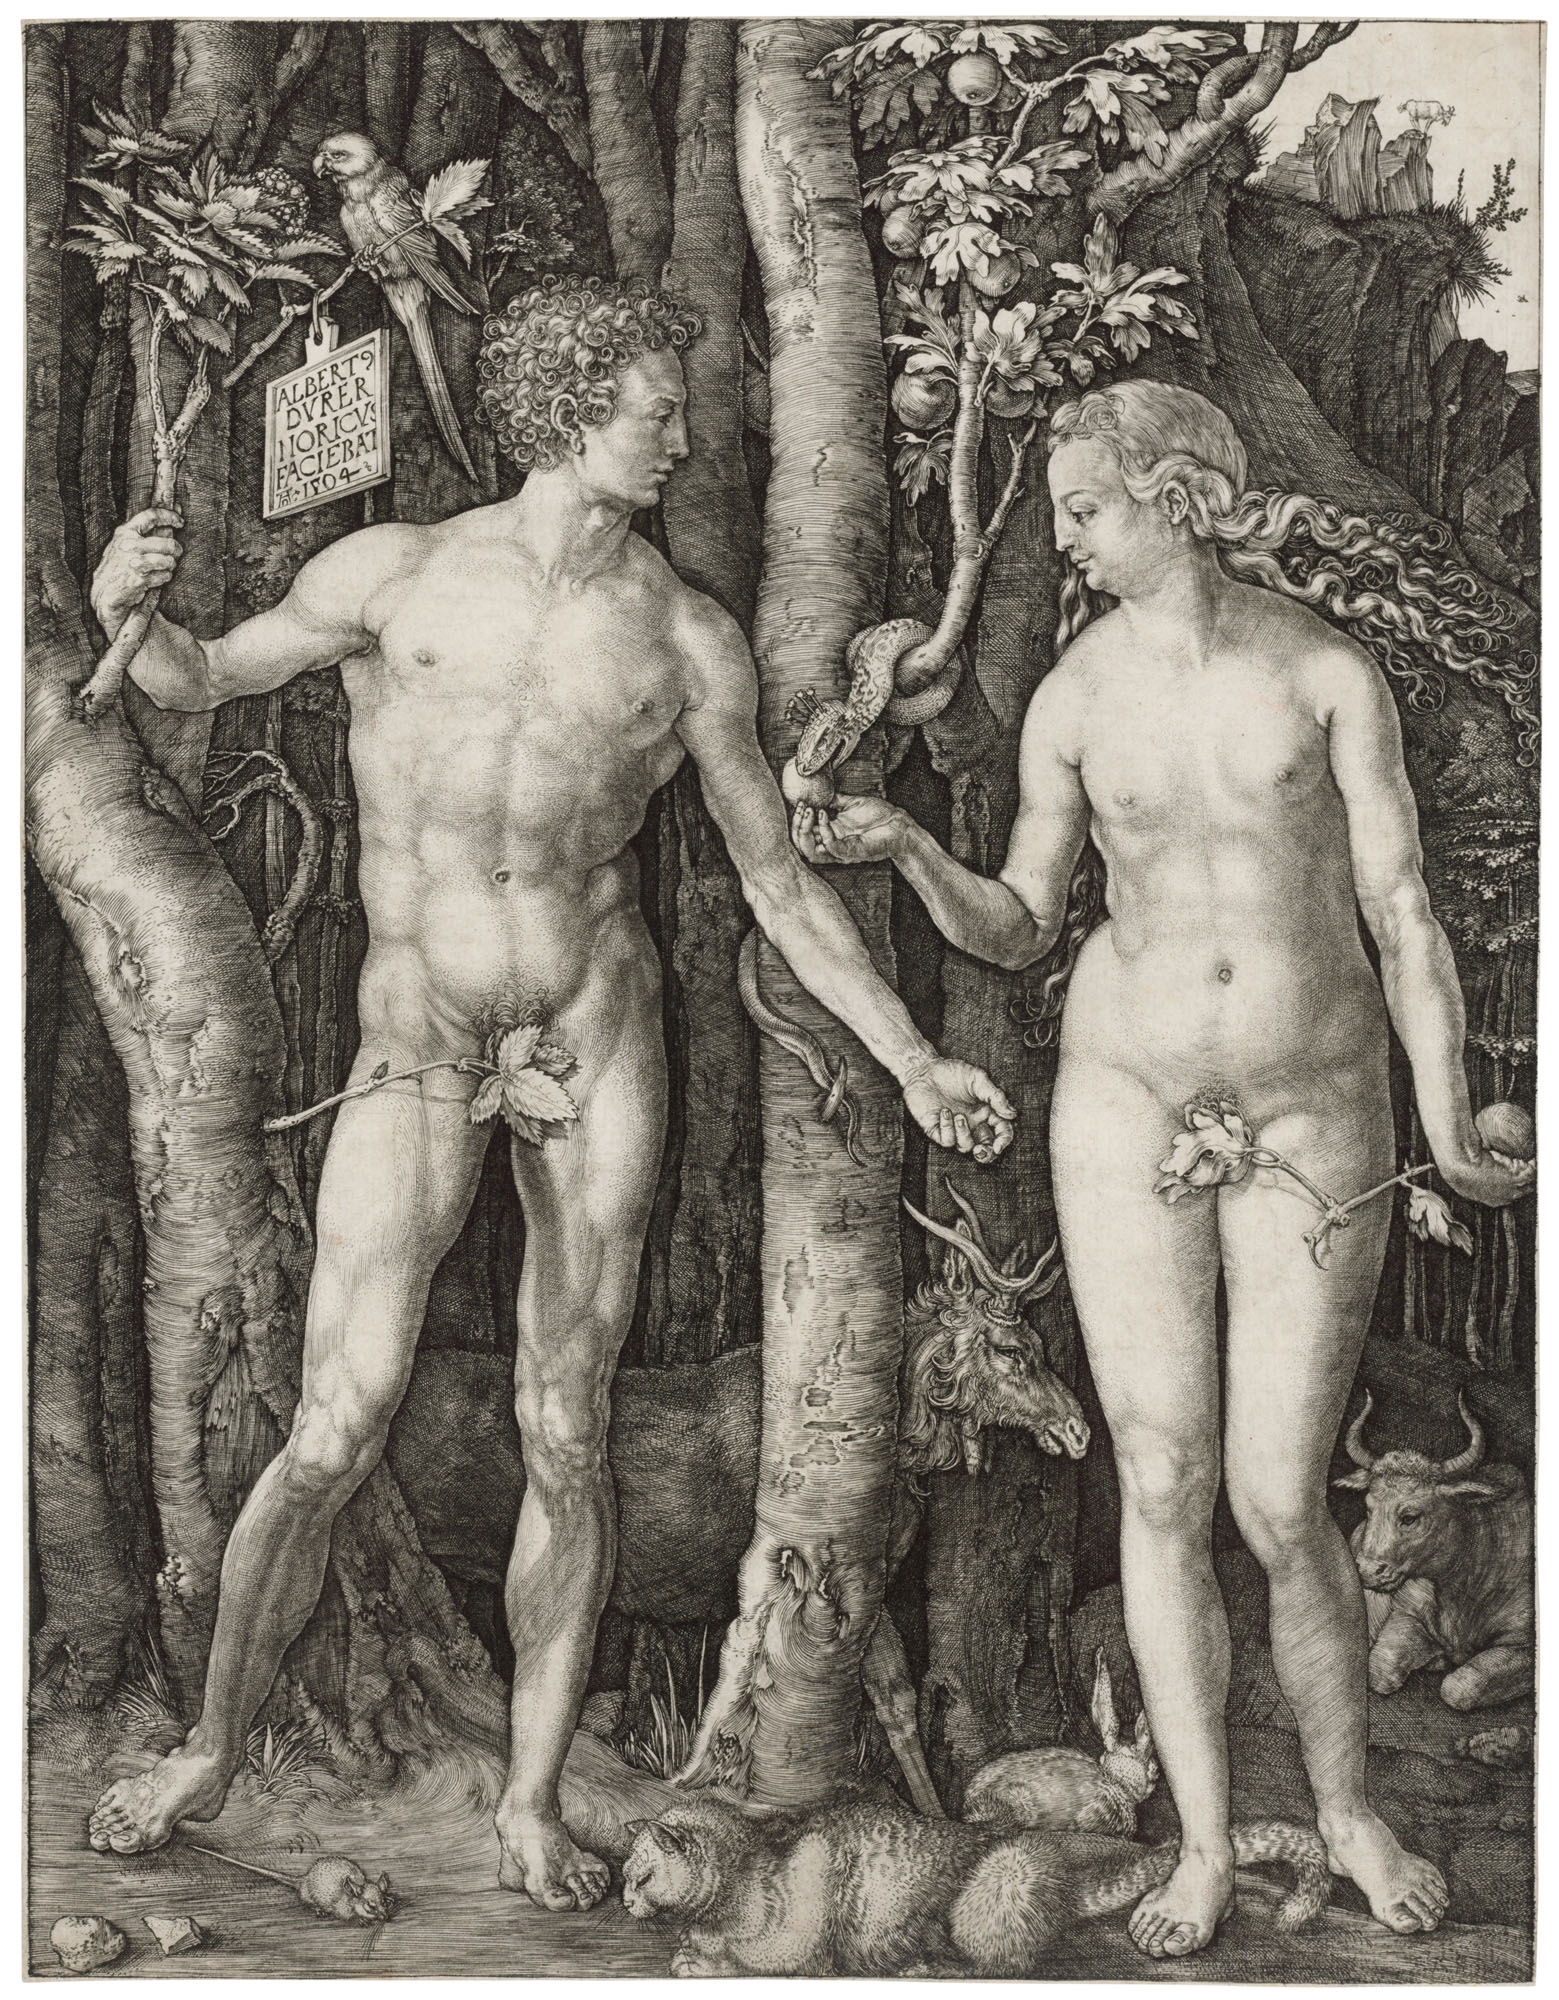 Adam and Eve by Albrecht Dürer, 1504